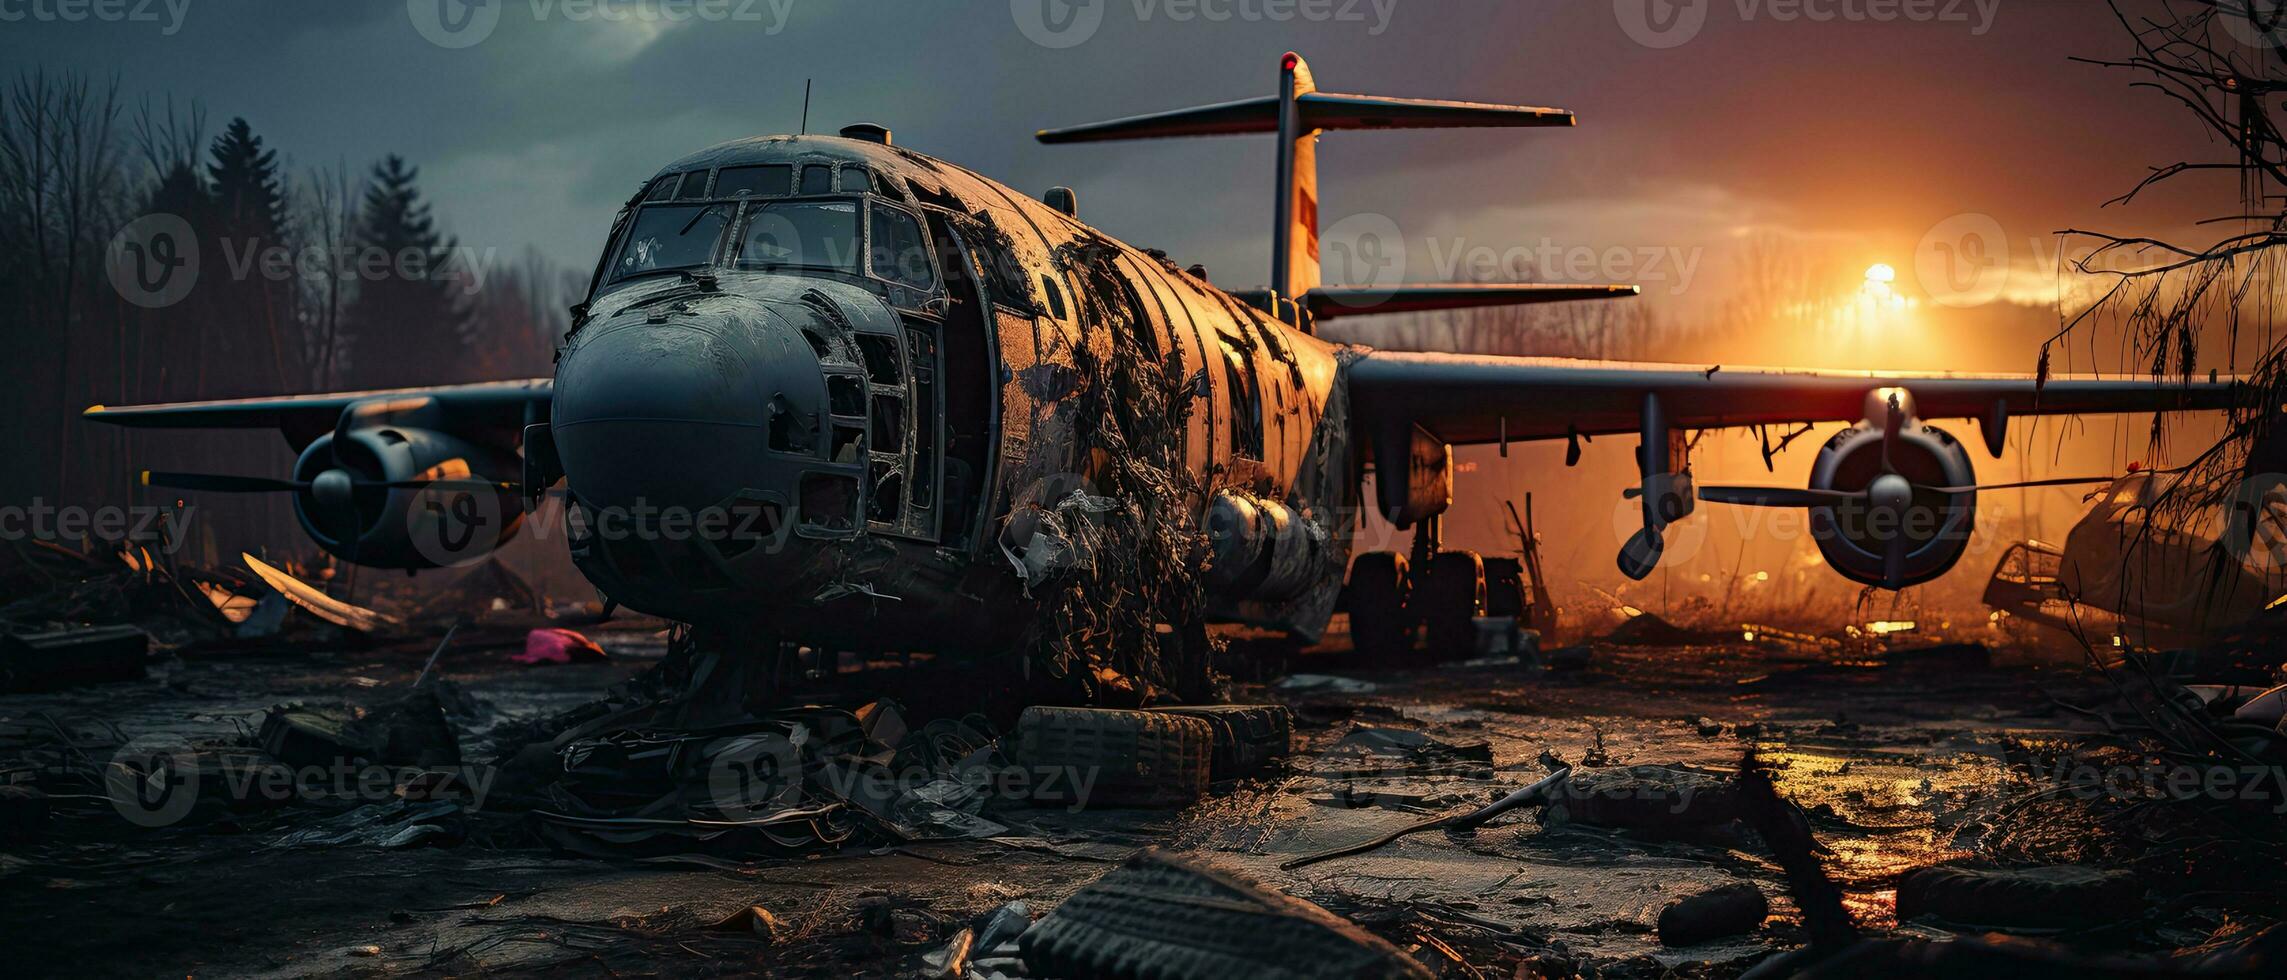 grande guerra avión militar enviar apocalipsis paisaje guerra juego fondo de pantalla foto Arte ilustración oxido